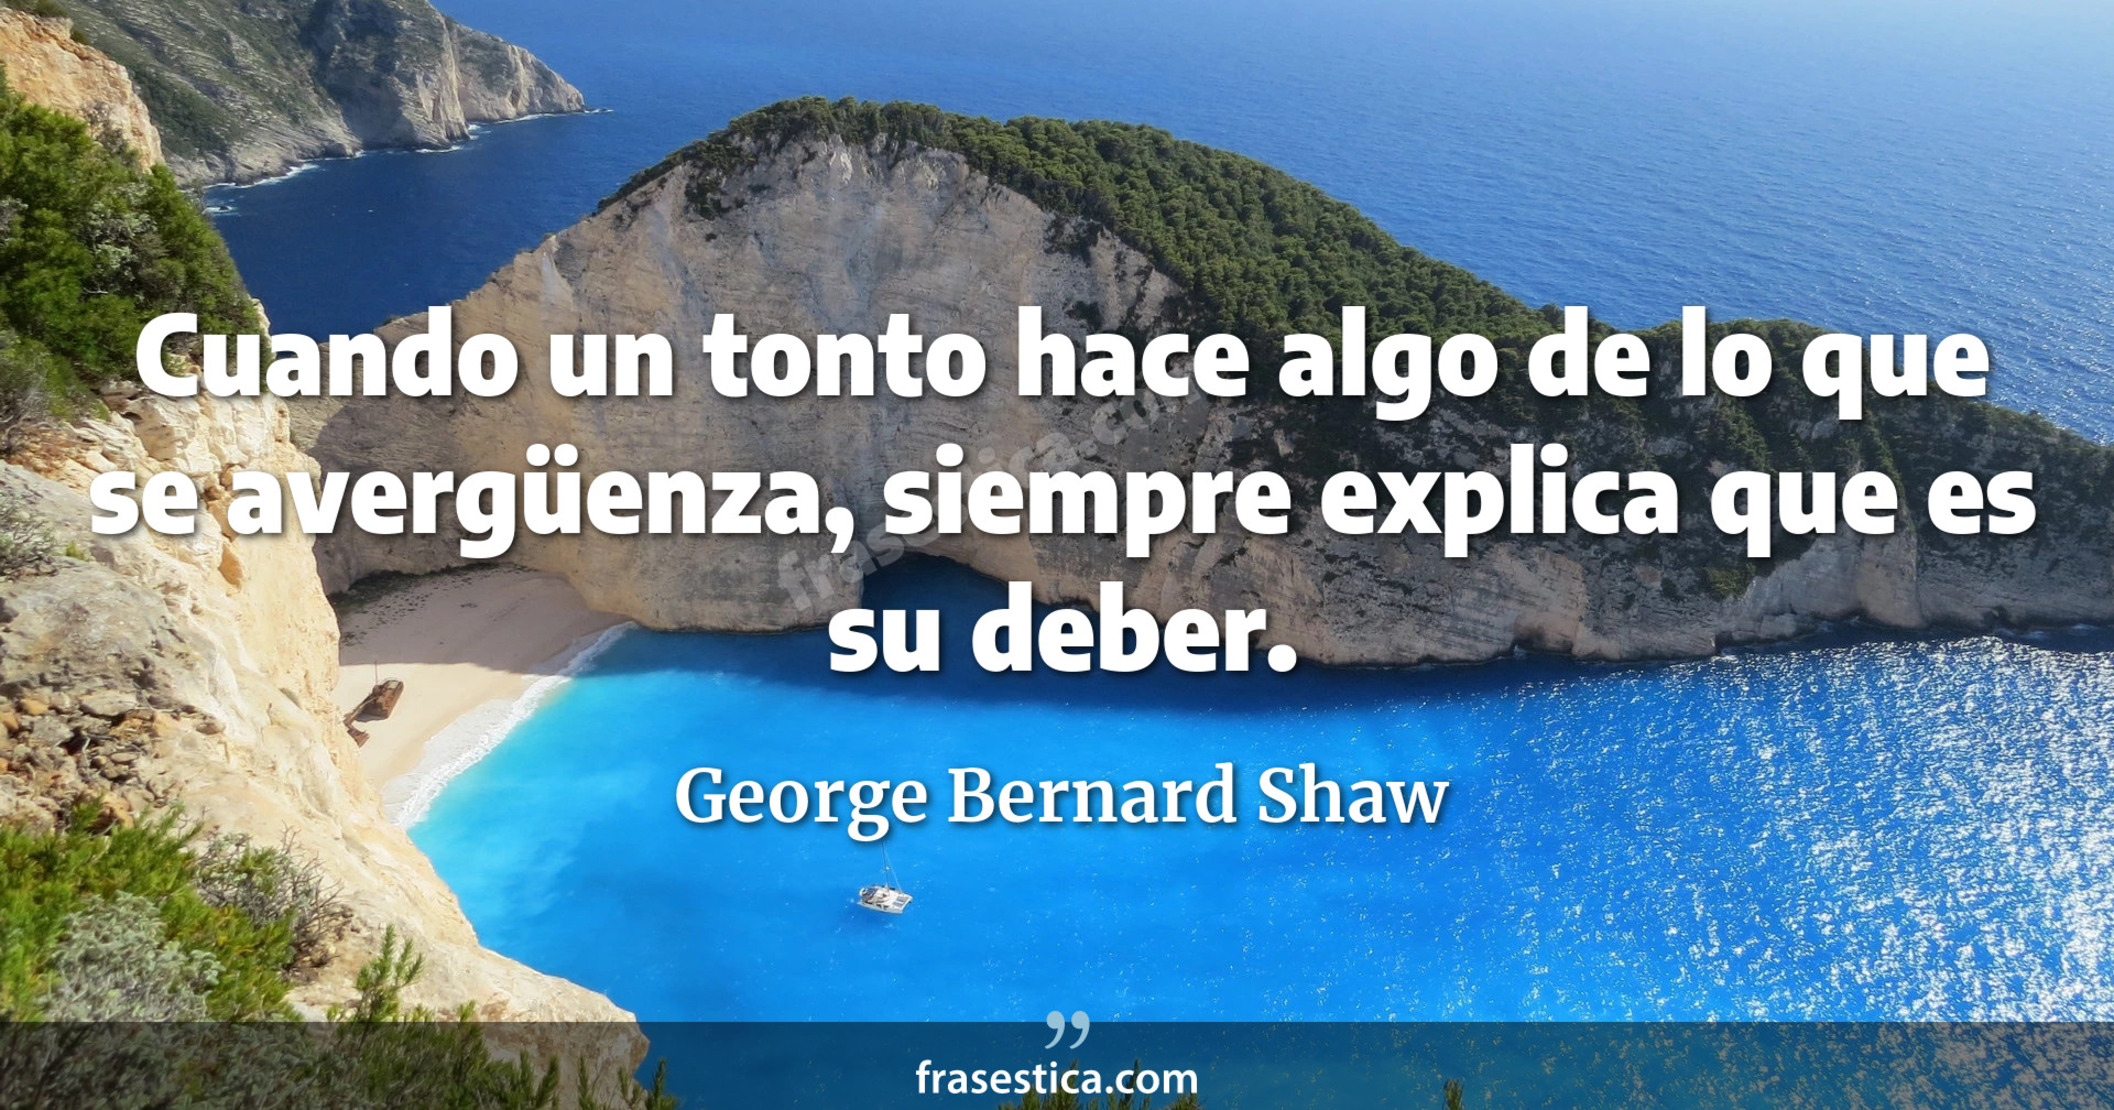 Cuando un tonto hace algo de lo que se avergüenza, siempre explica que es su deber. - George Bernard Shaw